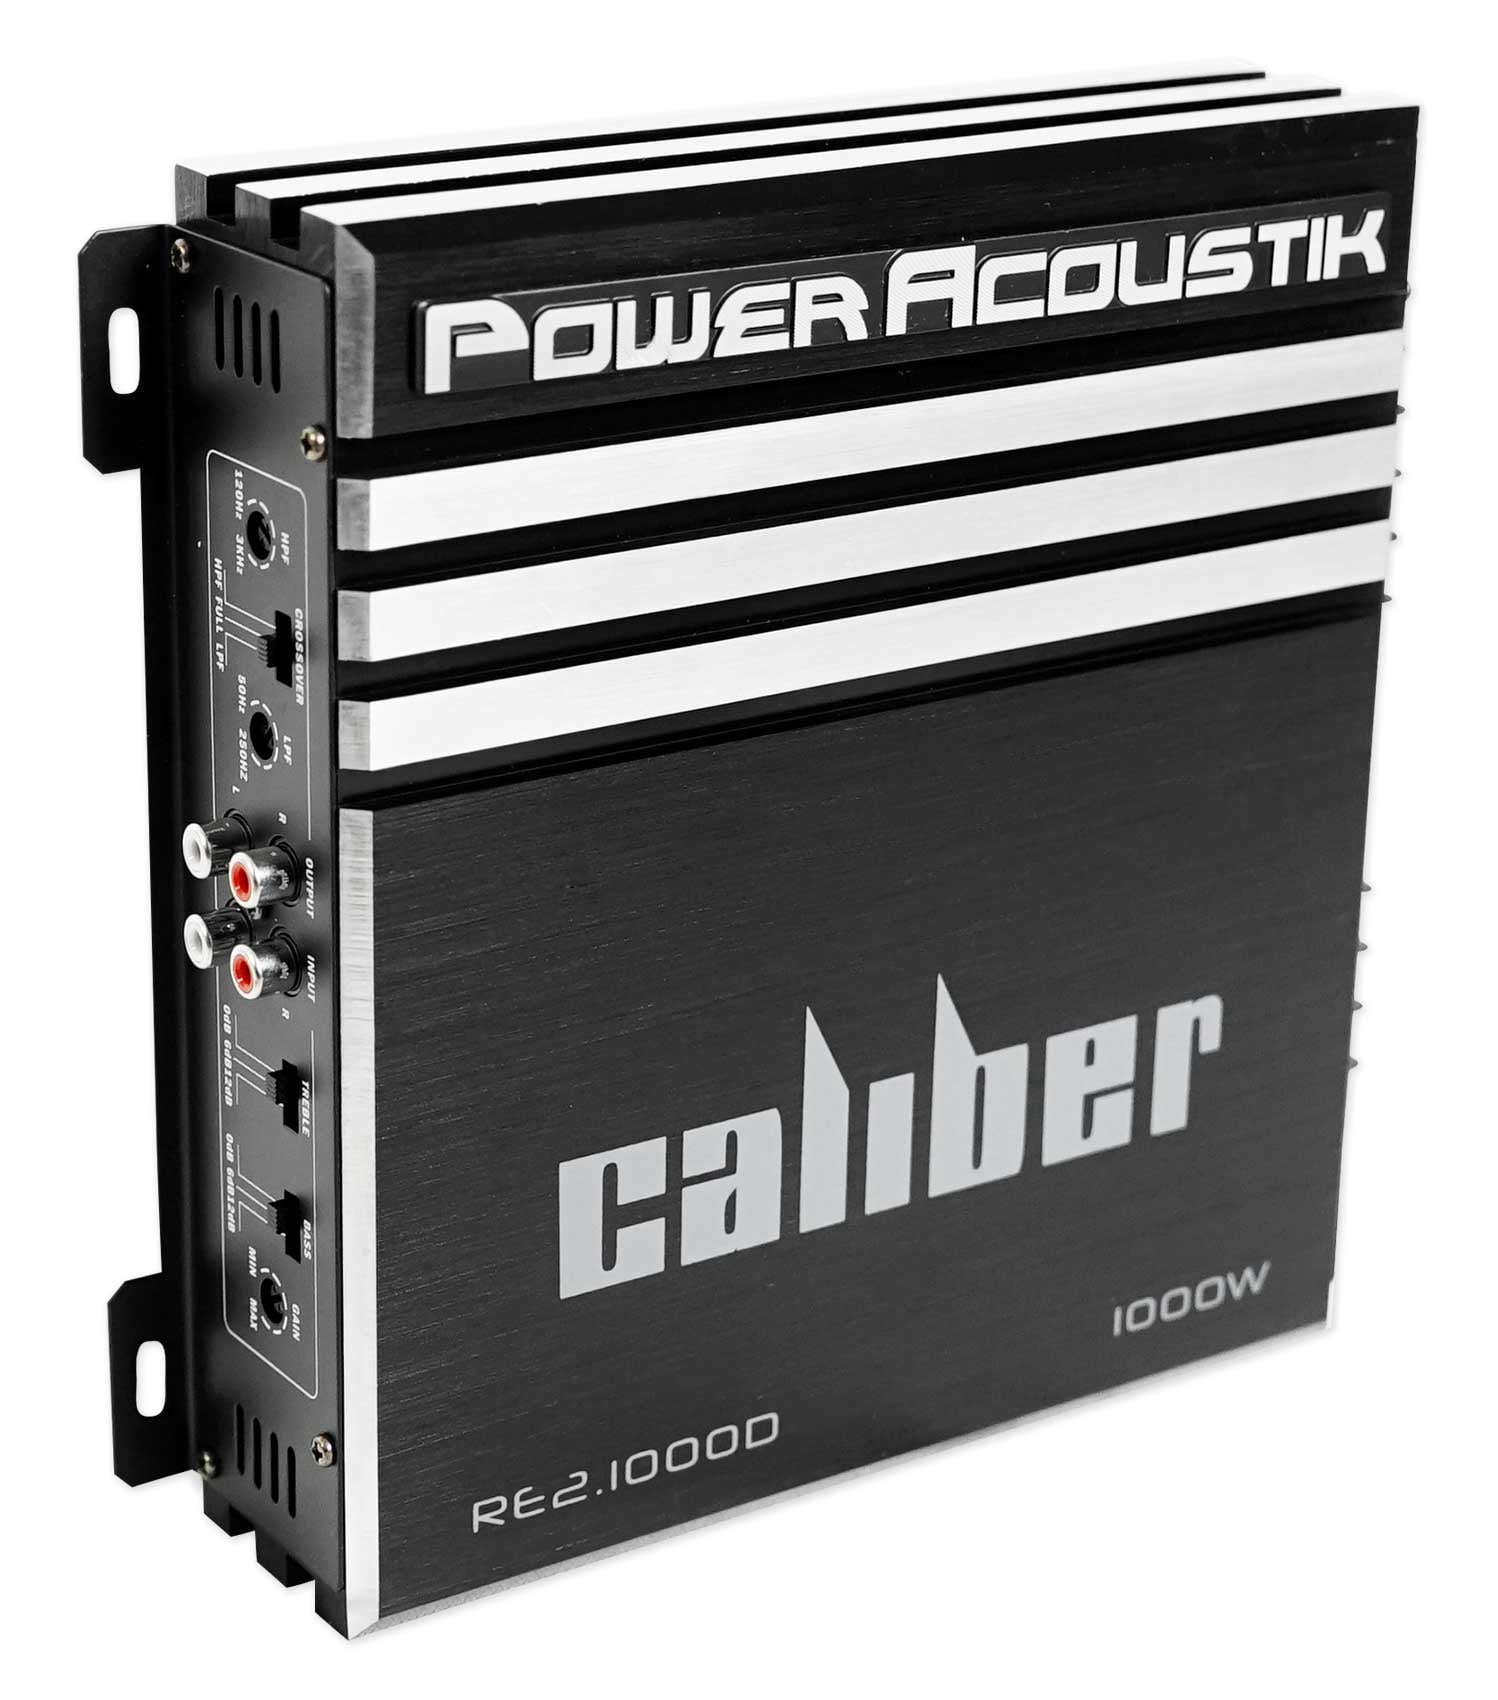 Power Acoustik EG1-7000D 7000 Watt Monoblock Full Range Car Subwoofer Amplifier 